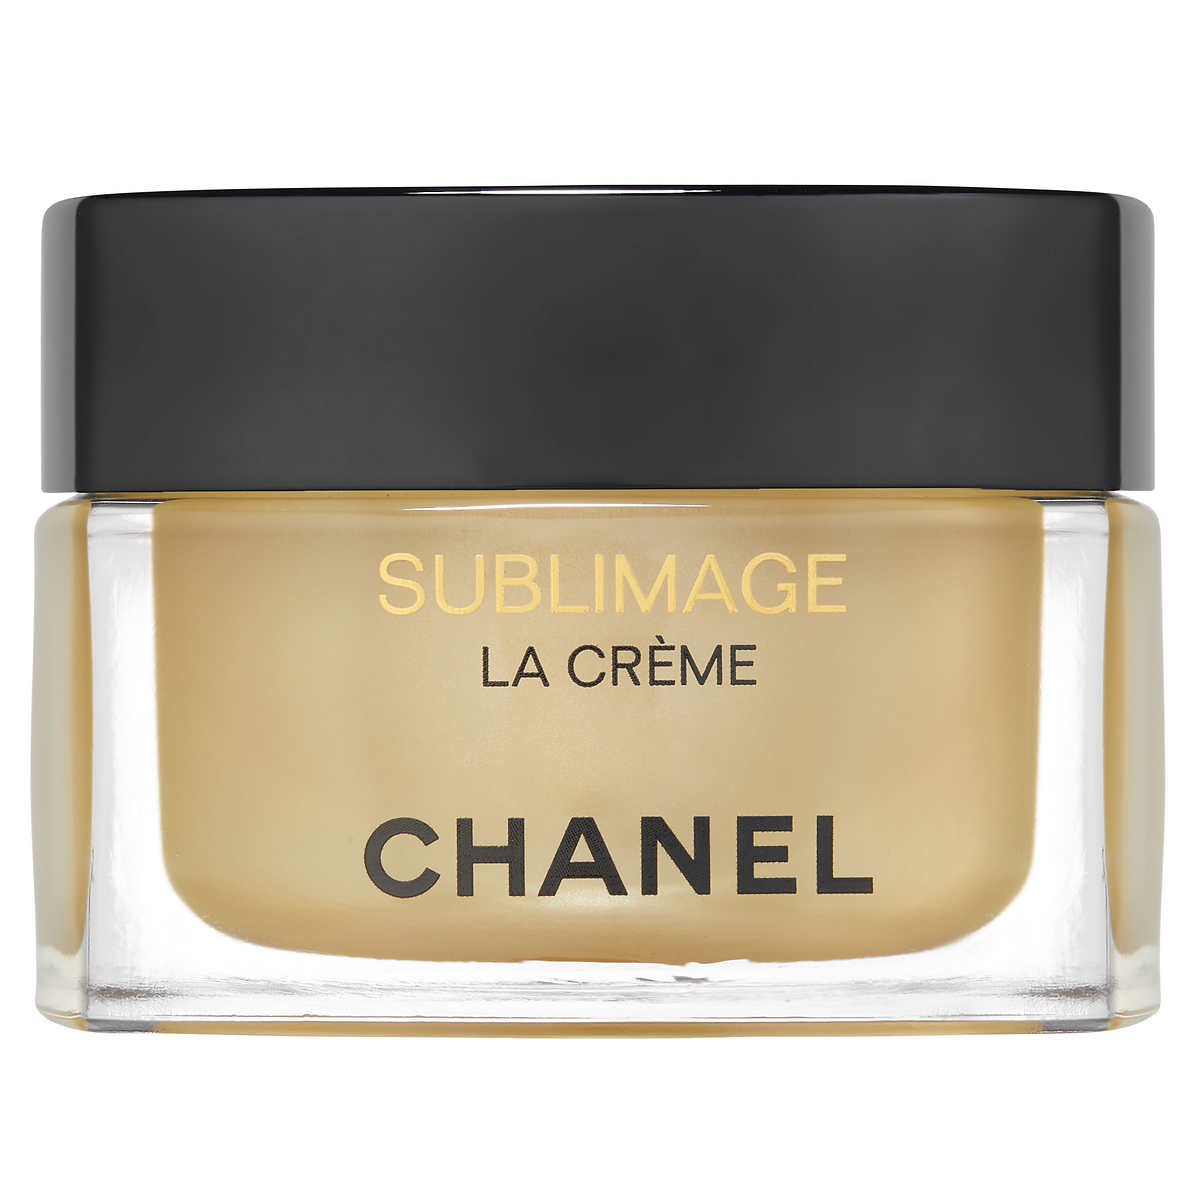 Chanel Sublimage La Creme, 1.7 oz